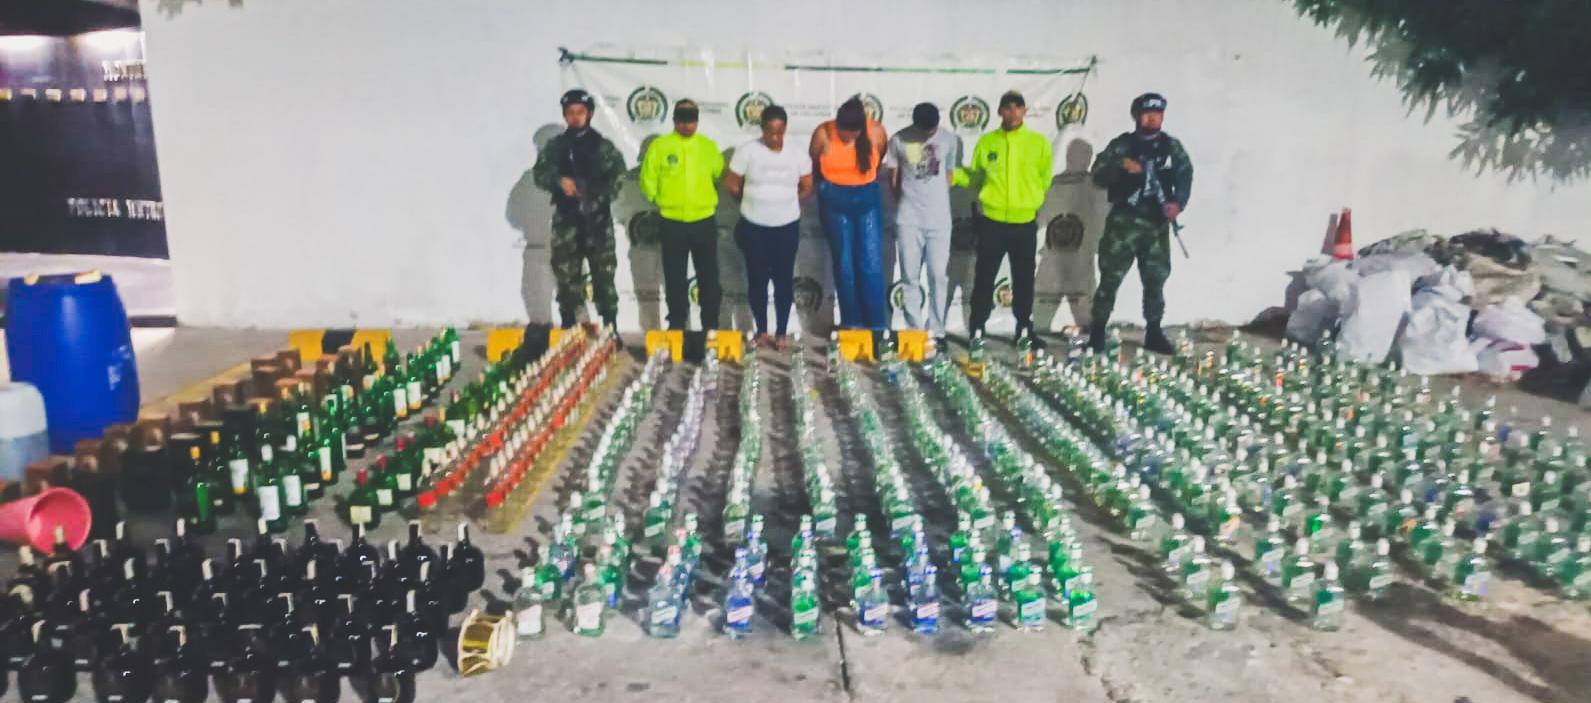 Capturados señalados de elaborar y distribuir licor adulterado en Las Nieves. 